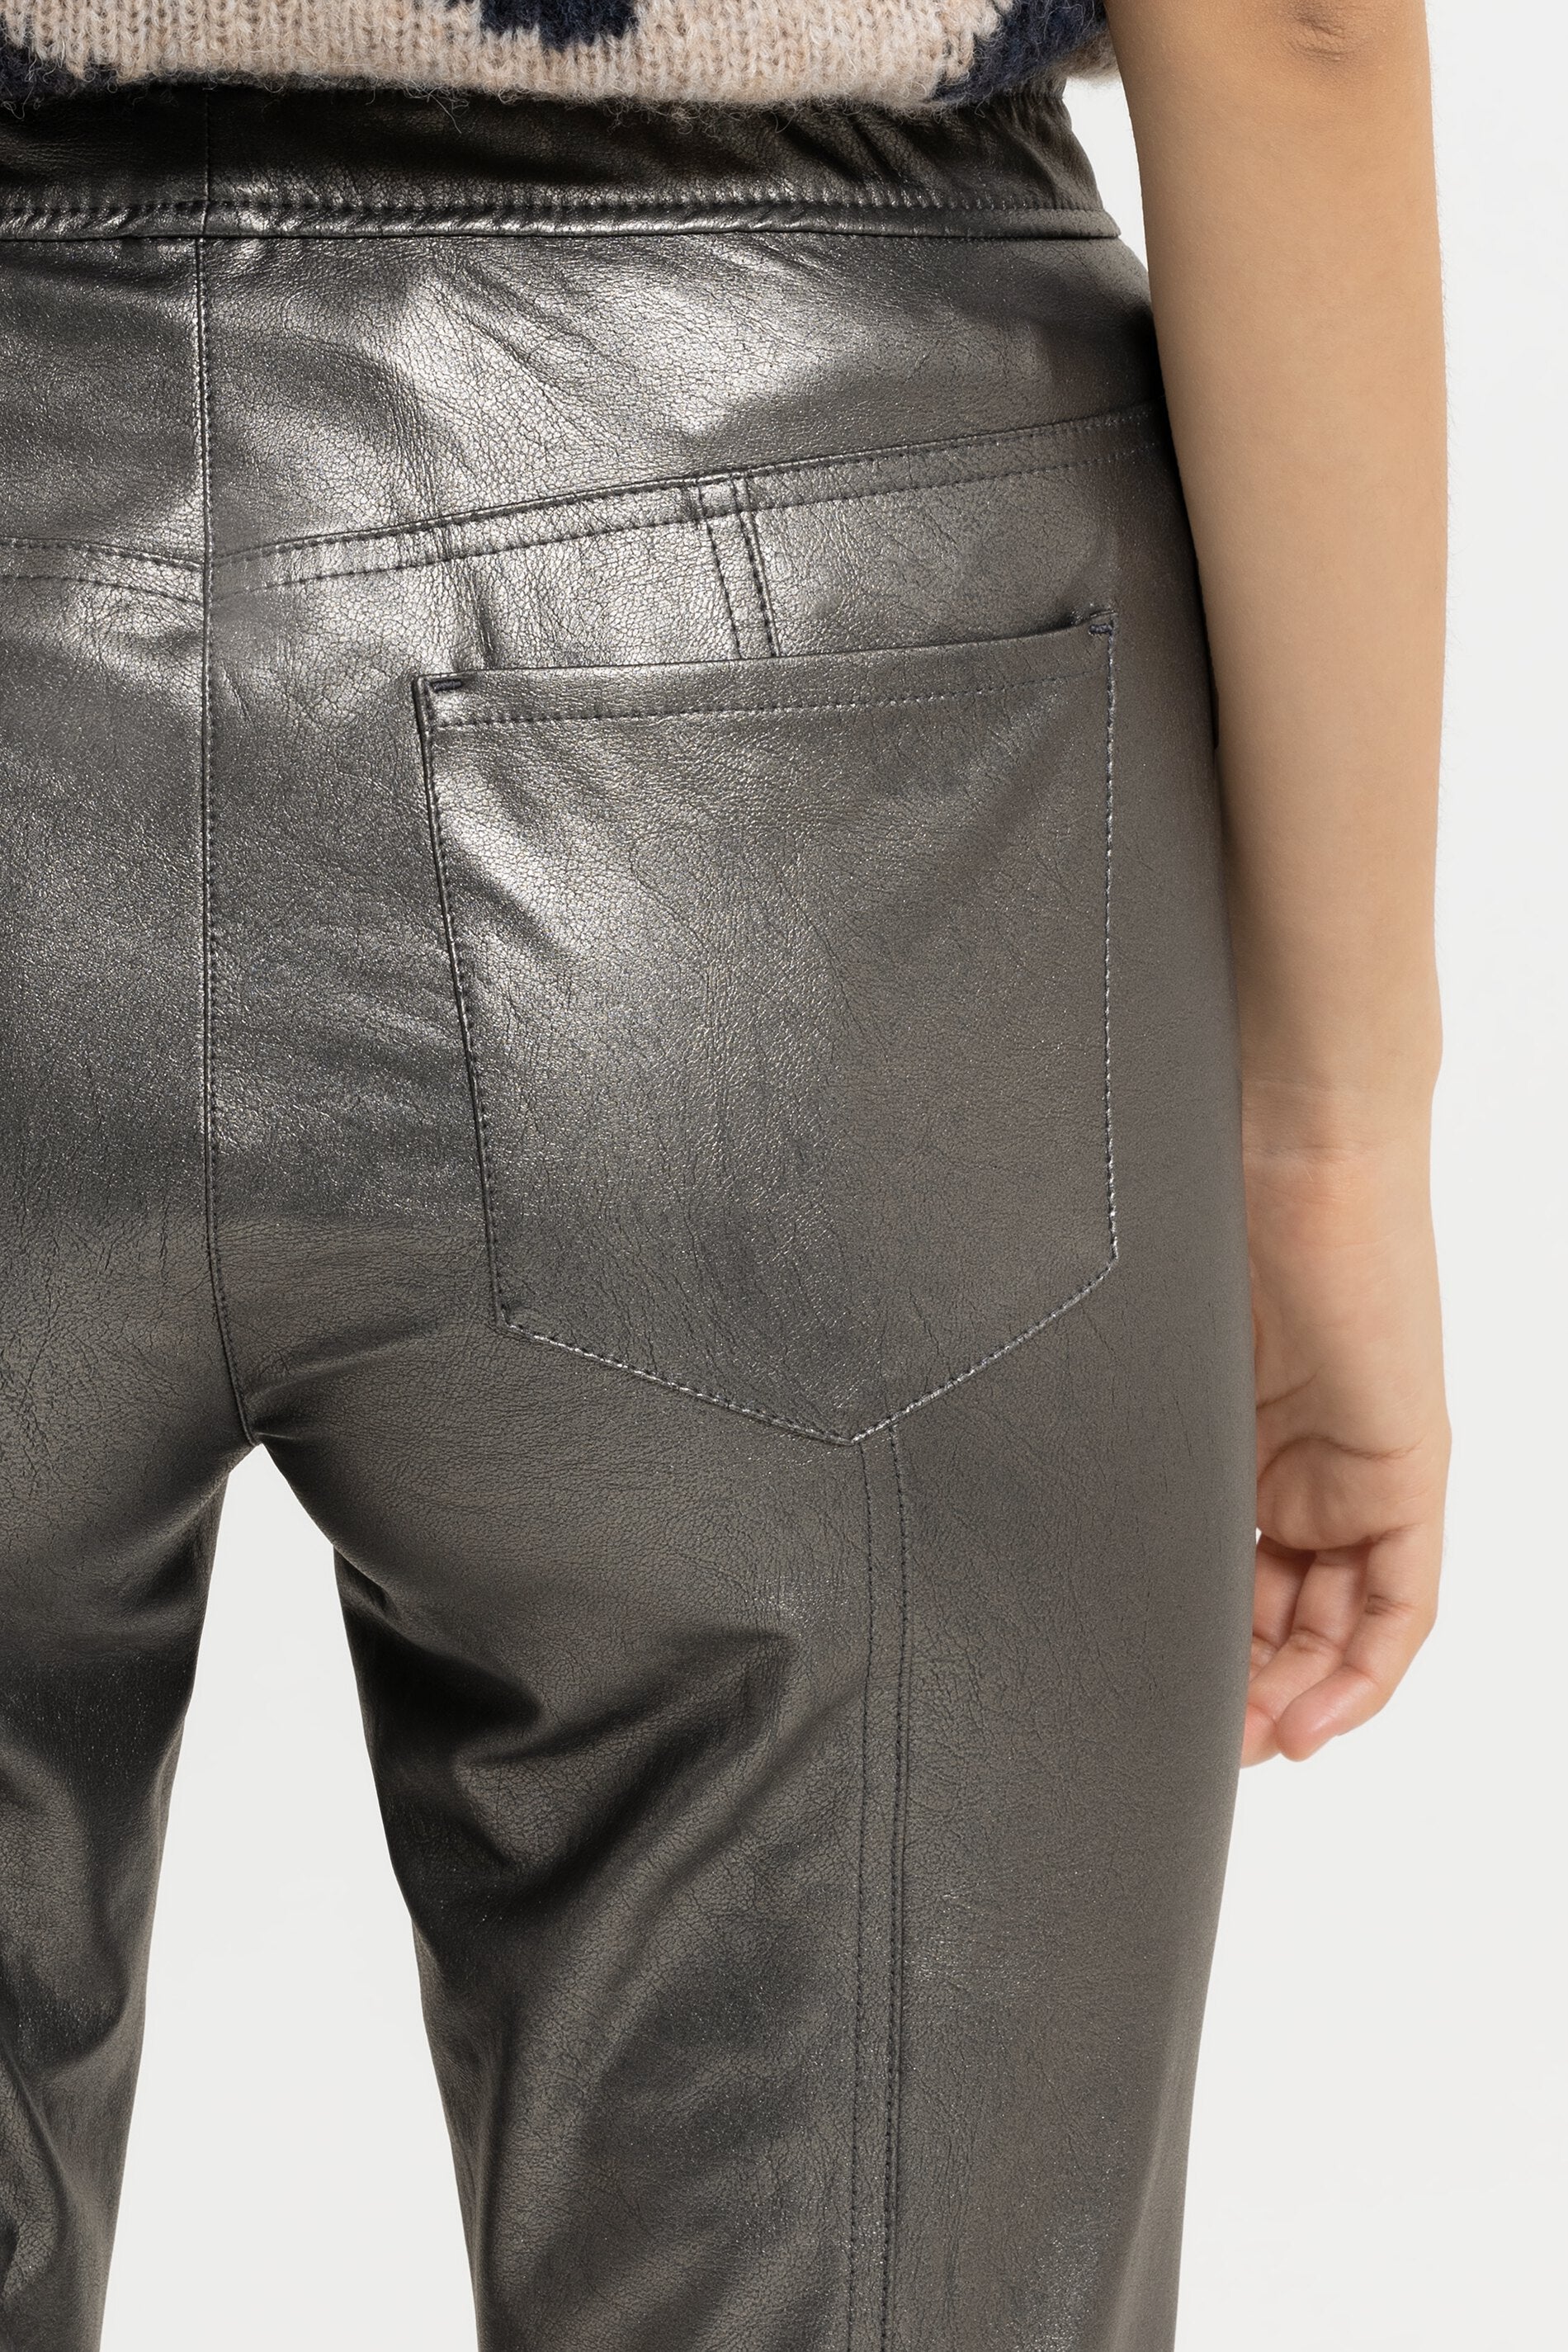 LUISA CERANO-OUTLET-SALE-Skinny-Pants in Leder-Optik-Hosen-by-ARCHIVIST